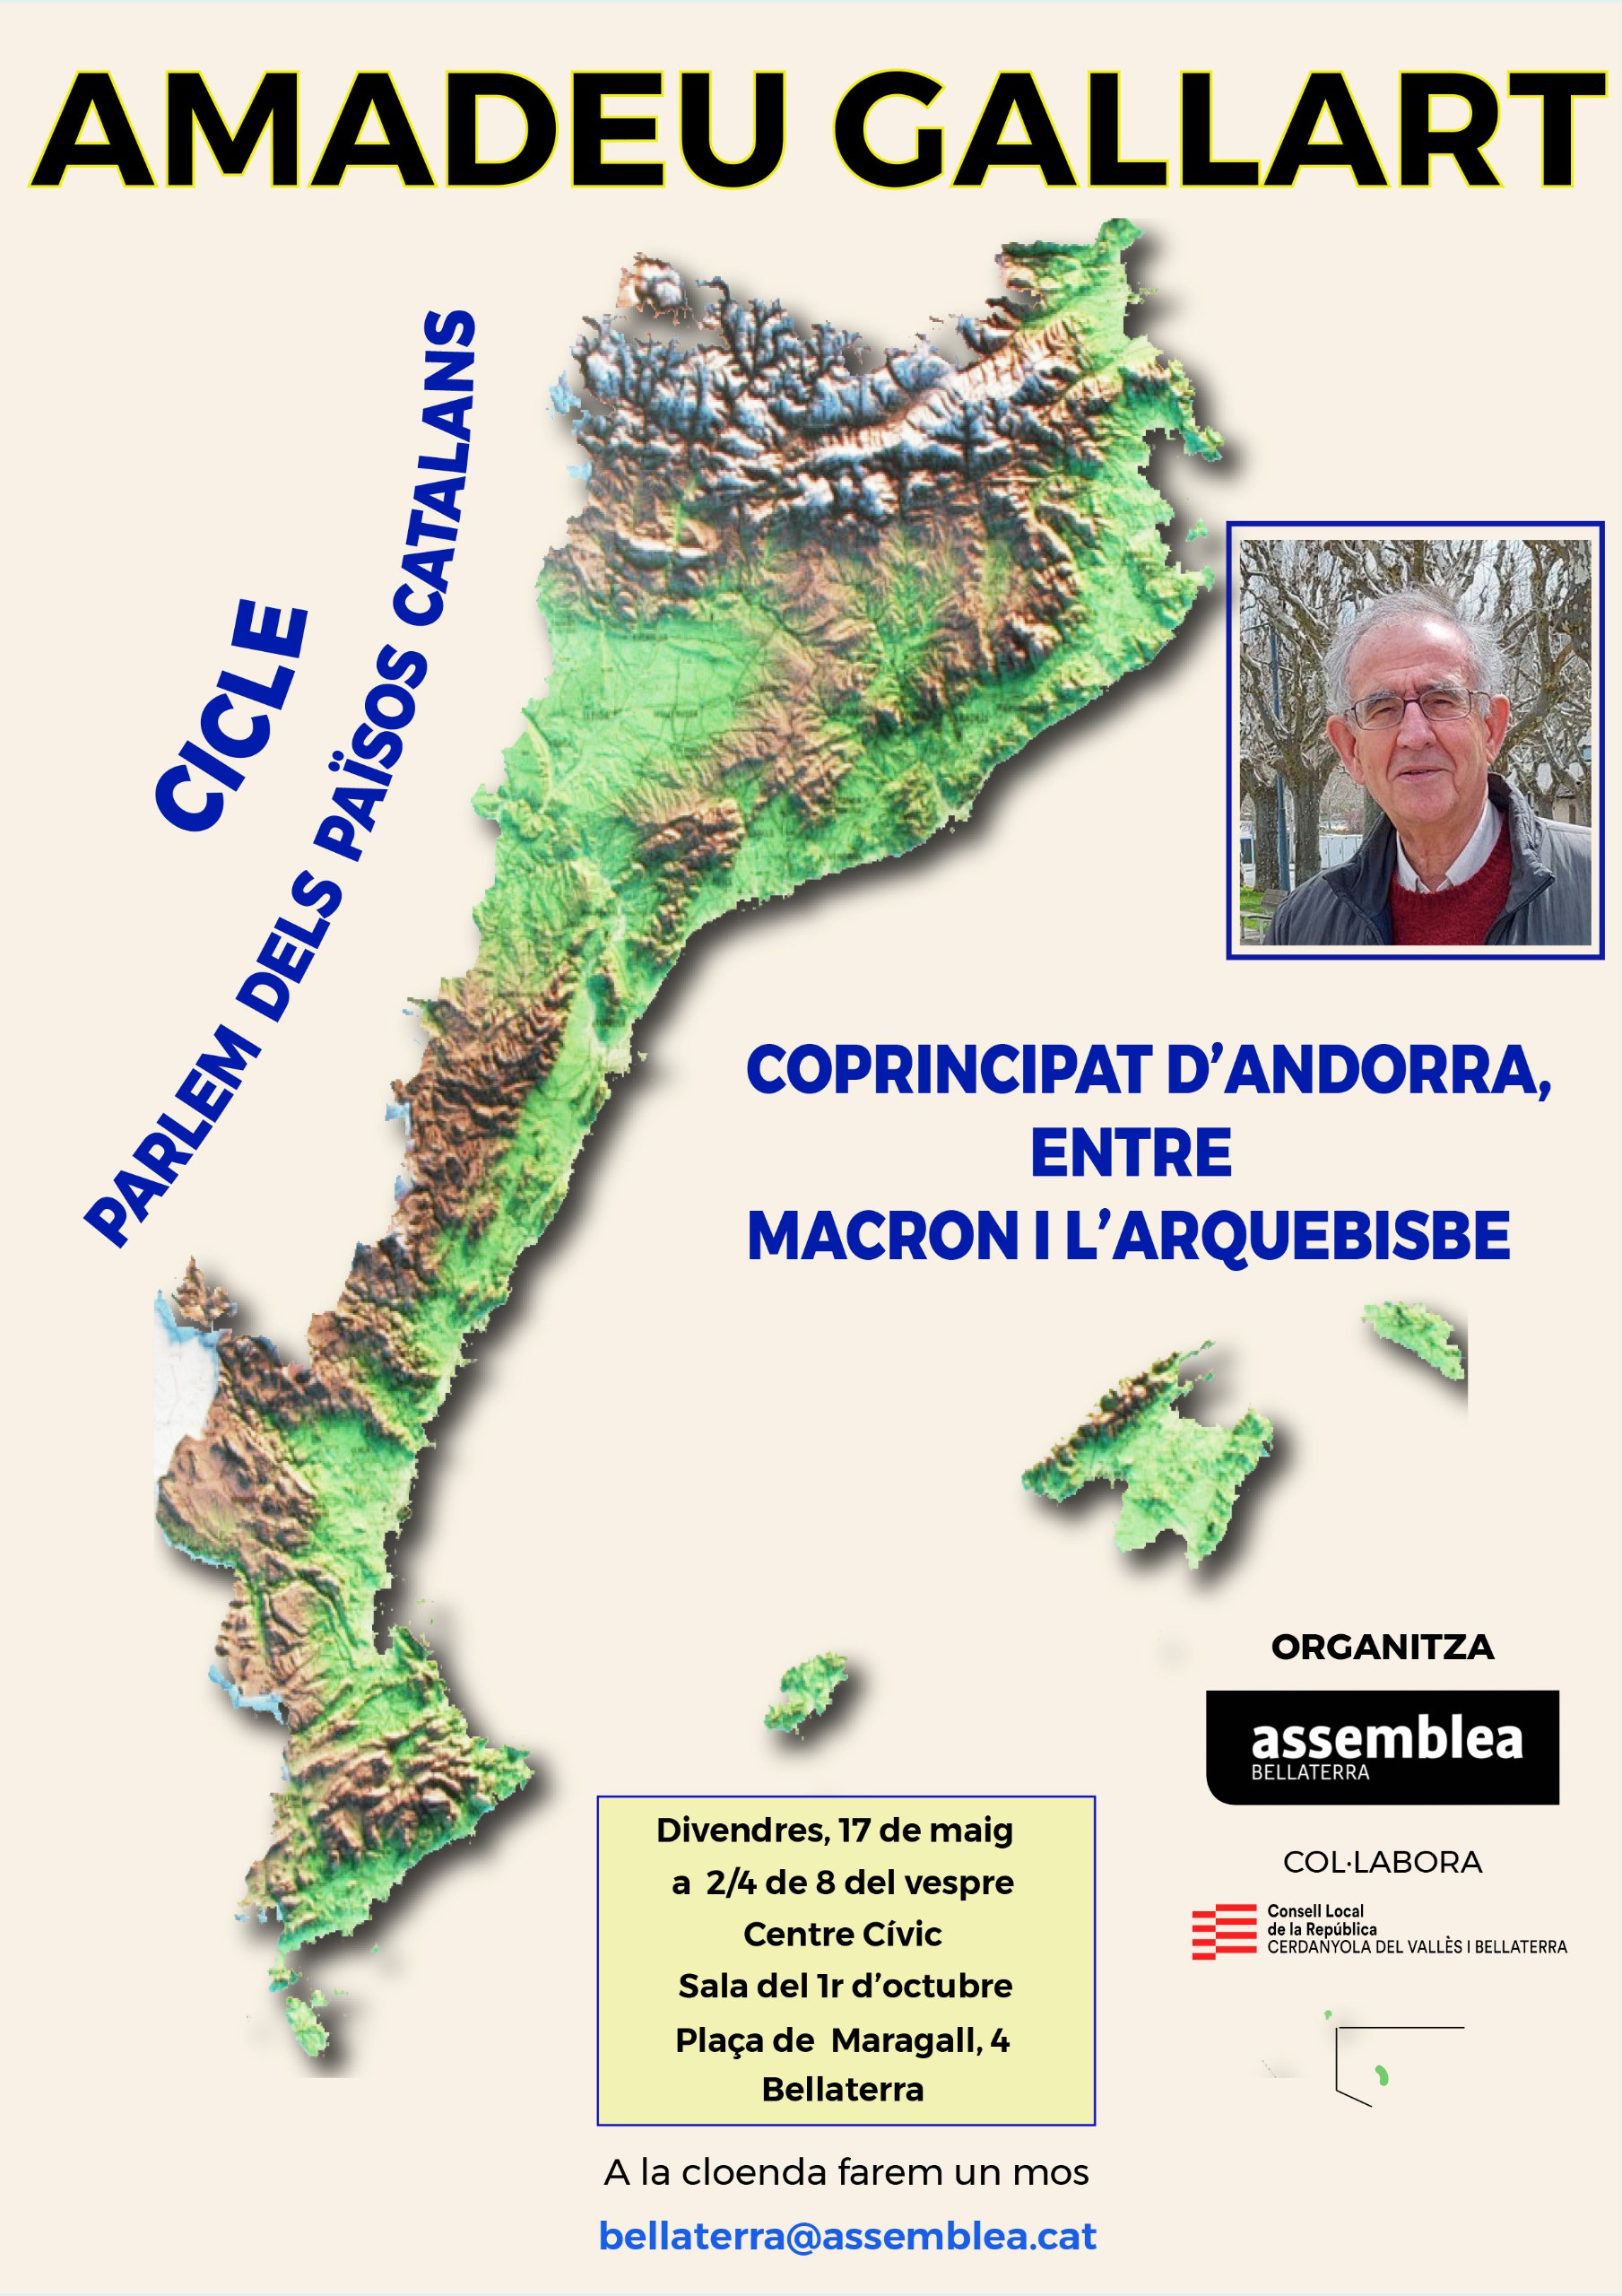 "Coprincipat d'Andorra, entre Macron i l'Arquebisbe”